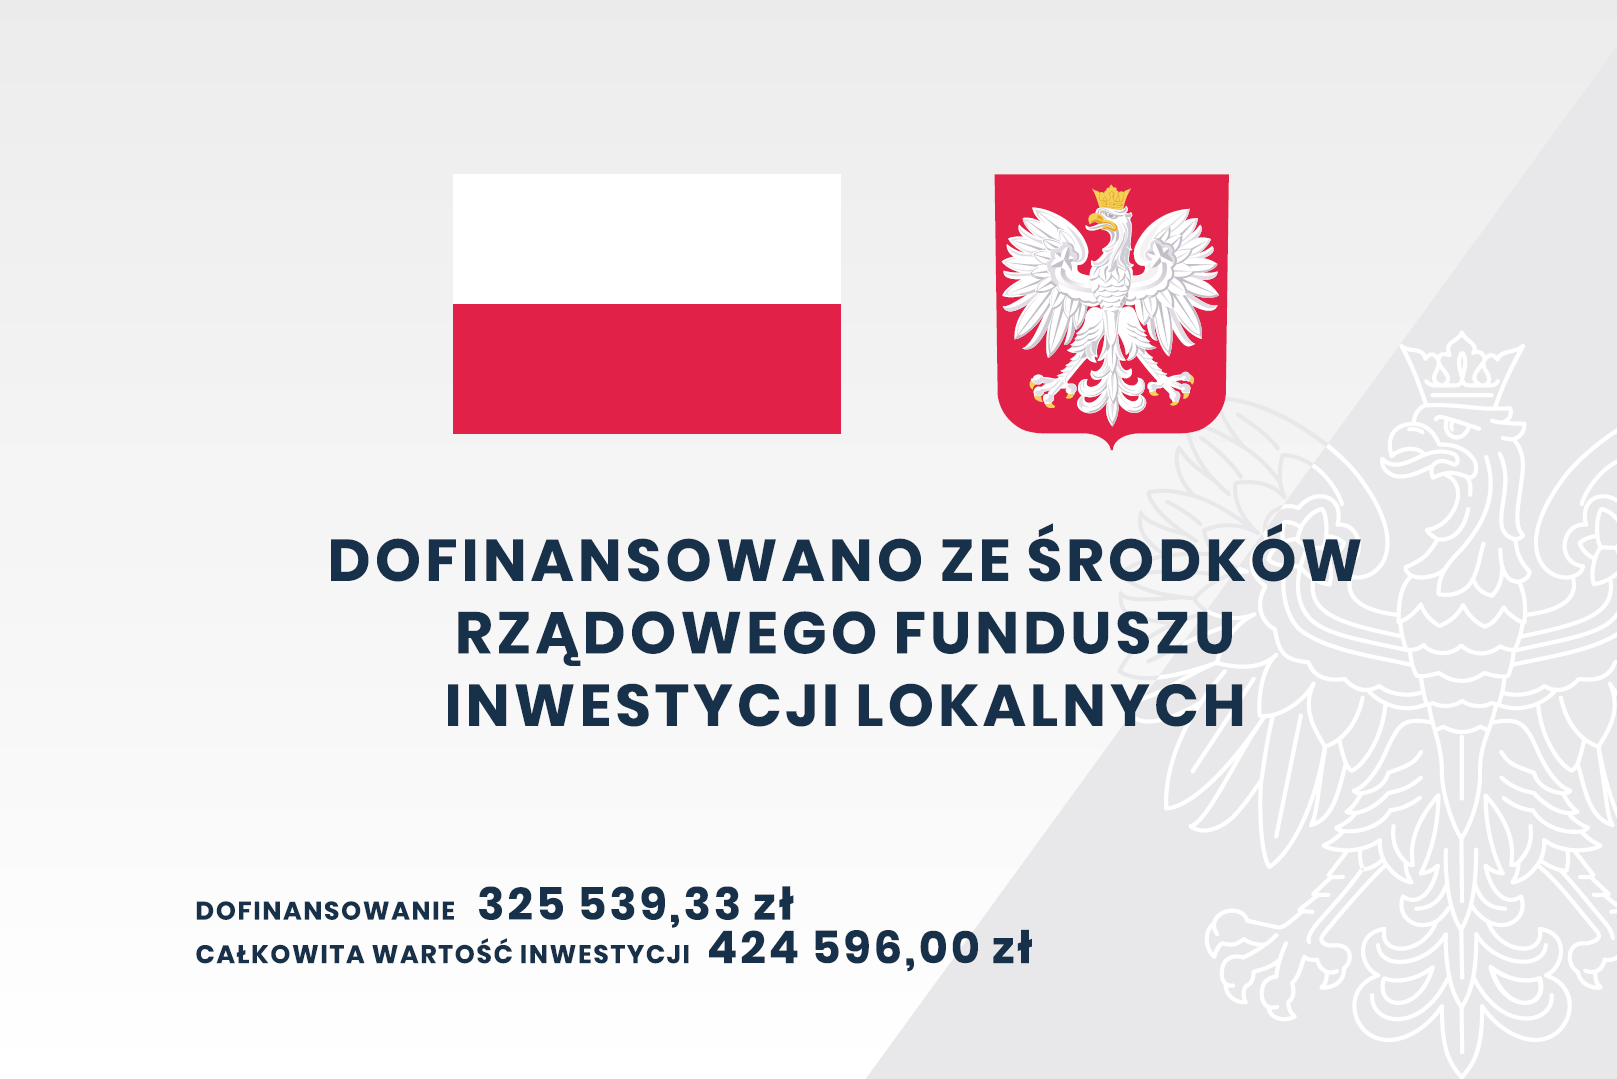 Flaga oraz Godło Polski a pod nimi tekst "Dofinansowano ze środków Rządowego Funduszu Inwestycji Lokalnych, Dofinansowanie: 325 539,33 zł, Całkowita wartość inwestycji: 424 596,00 zł"